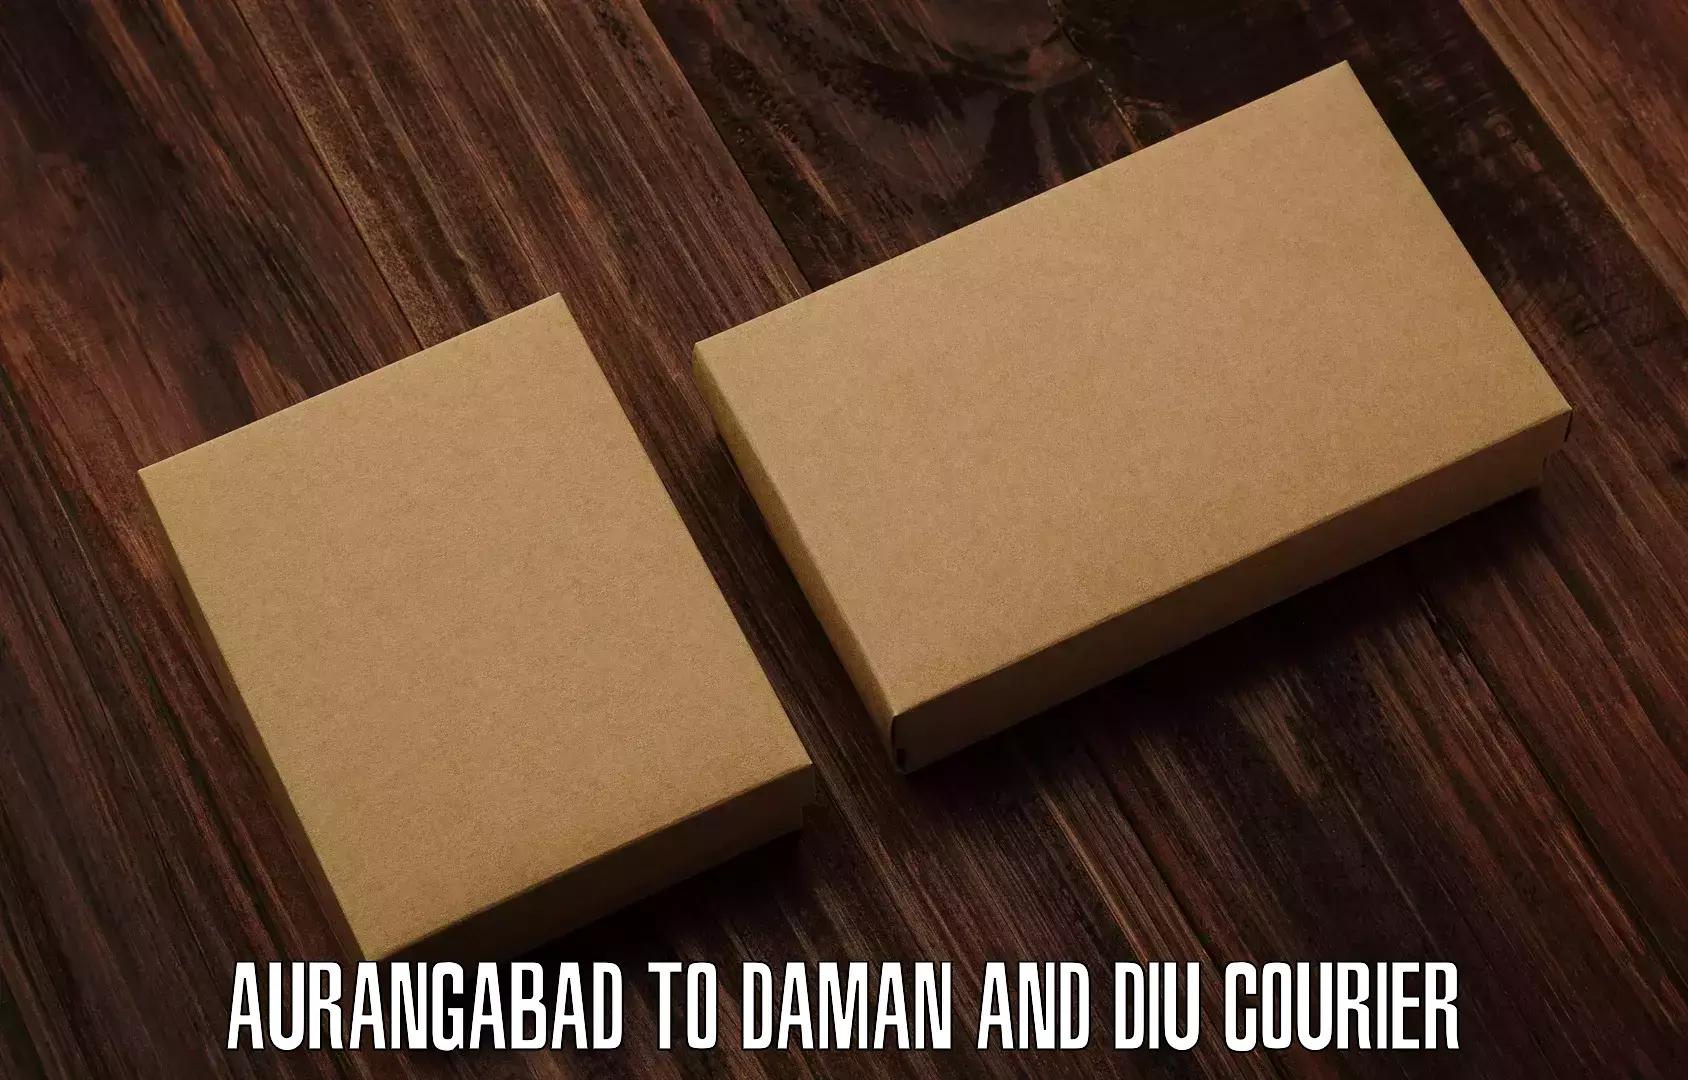 Express logistics Aurangabad to Daman and Diu